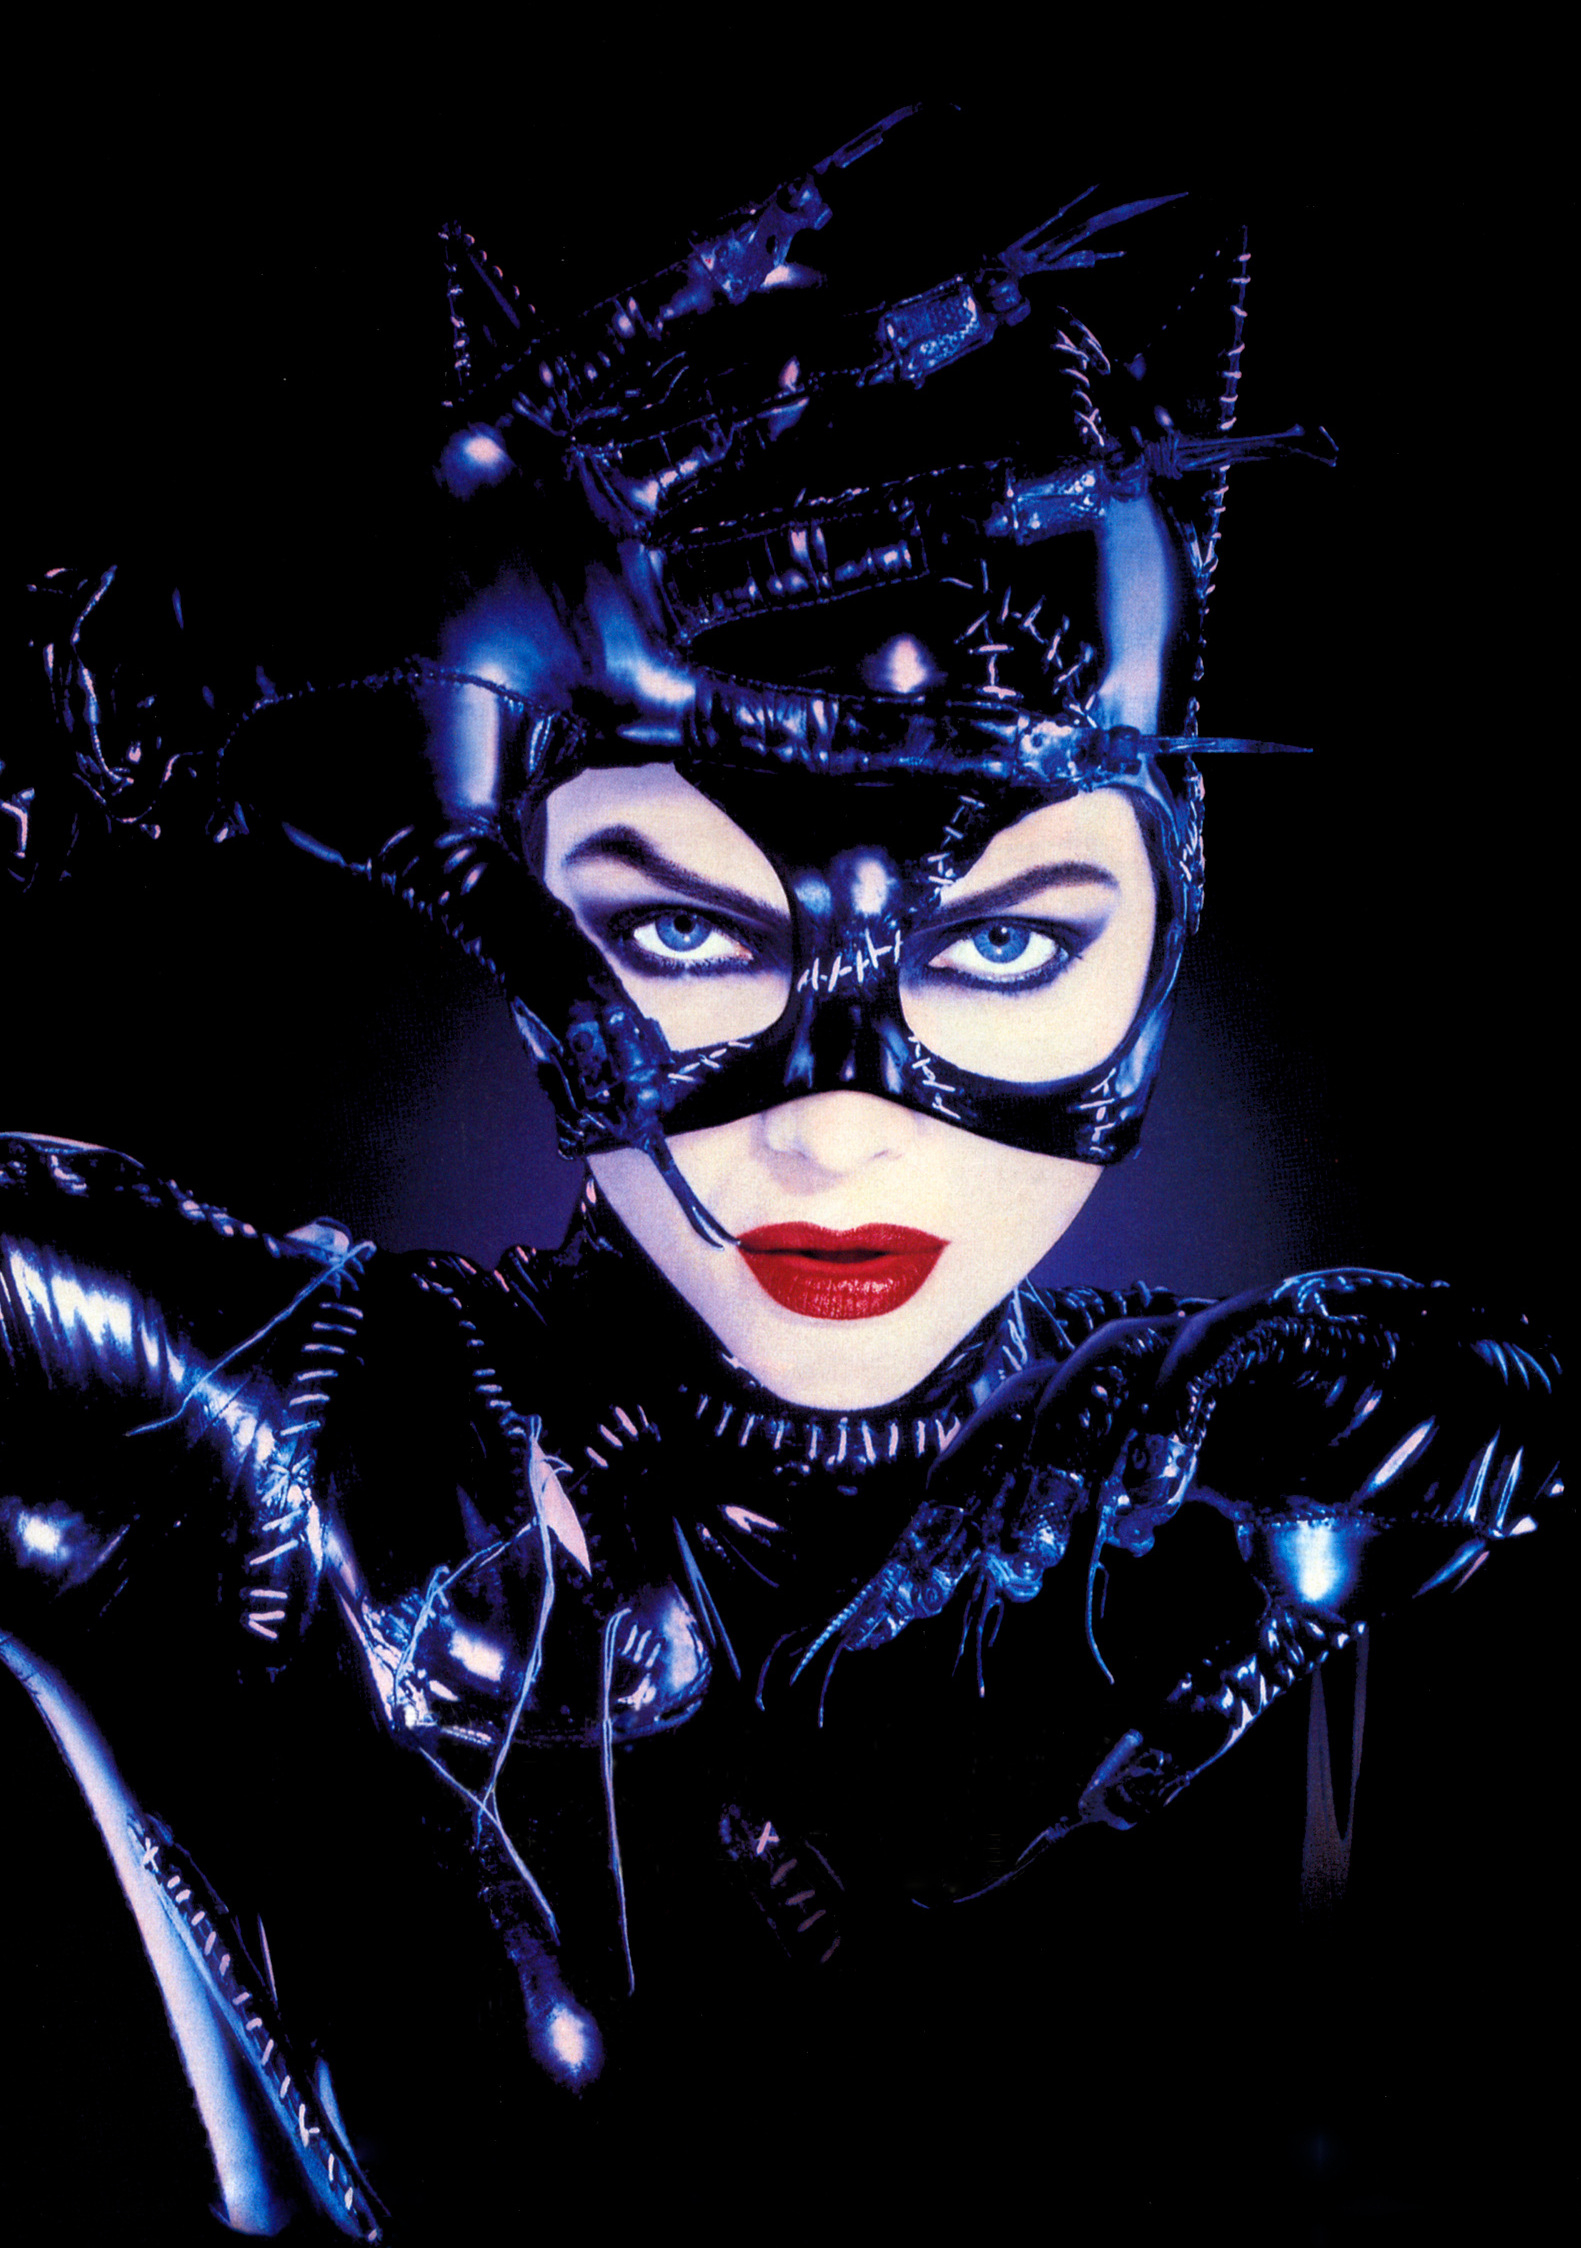 虽然《蝙蝠侠:黑暗骑士崛起》里安妮·海瑟薇的猫女十分惊艳,但要说最